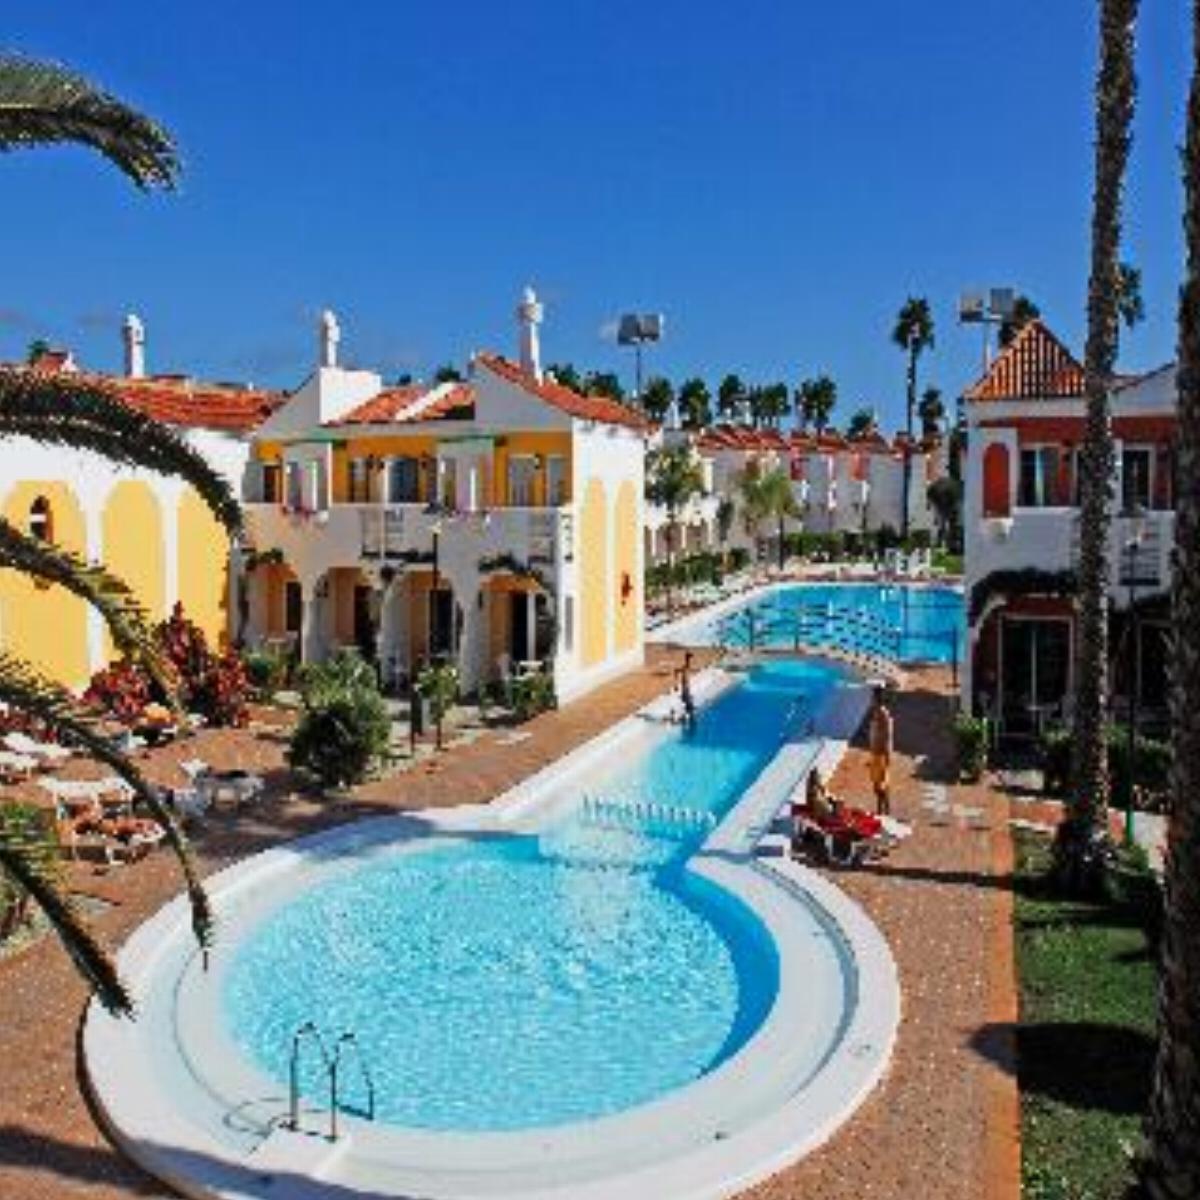 Green Golf (Bungalows) Hotel Gran Canaria Spain